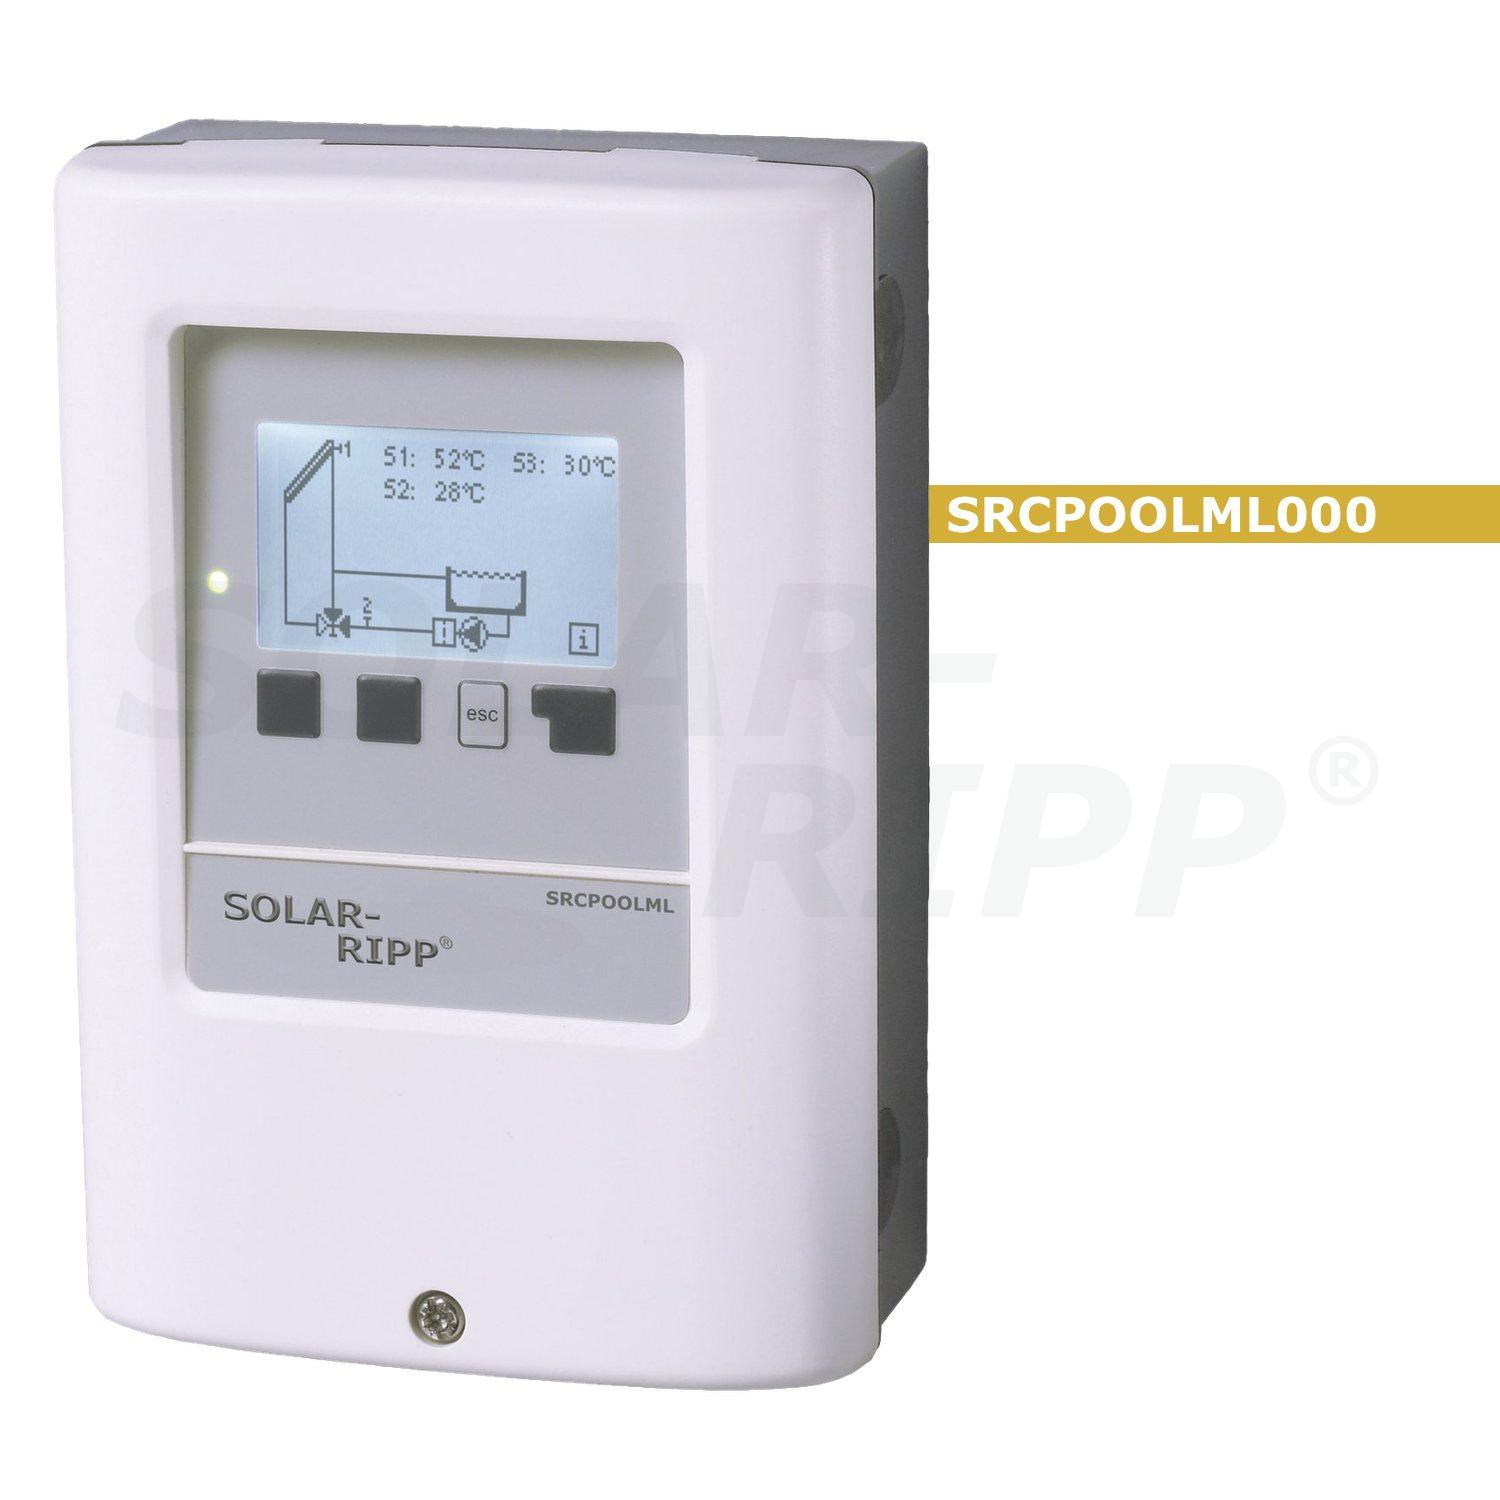 Regolatore solare SOLAR-RIPP ® SRCPOOLML000